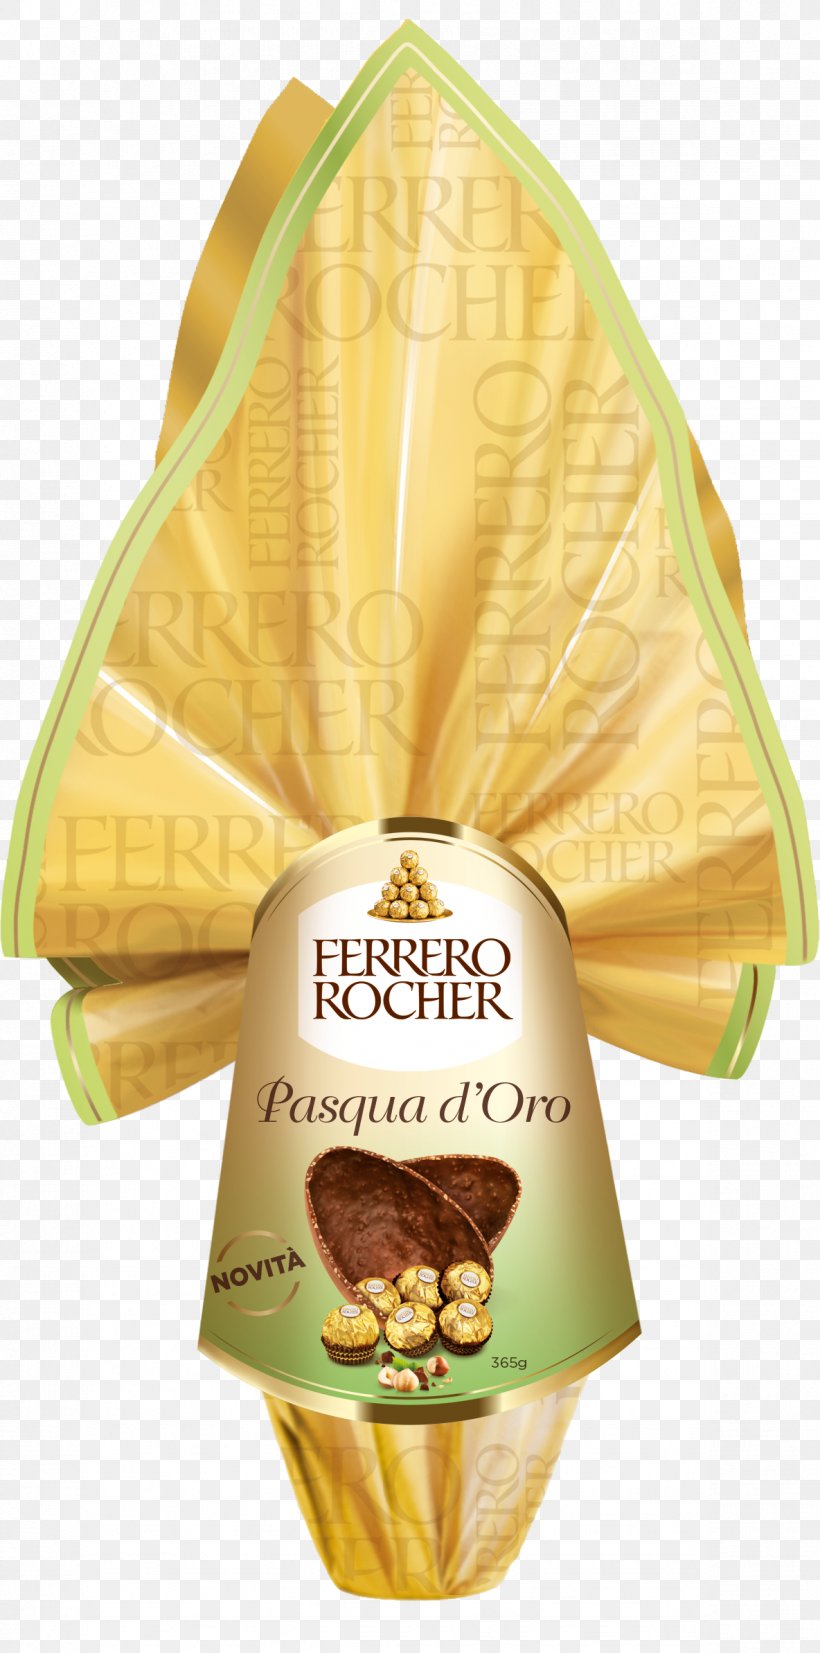 Ferrero Rocher Colomba Di Pasqua Ferrero SpA Egg Food, PNG, 1184x2387px, Ferrero Rocher, Chocolate, Cocoa Butter, Colomba Di Pasqua, Commodity Download Free